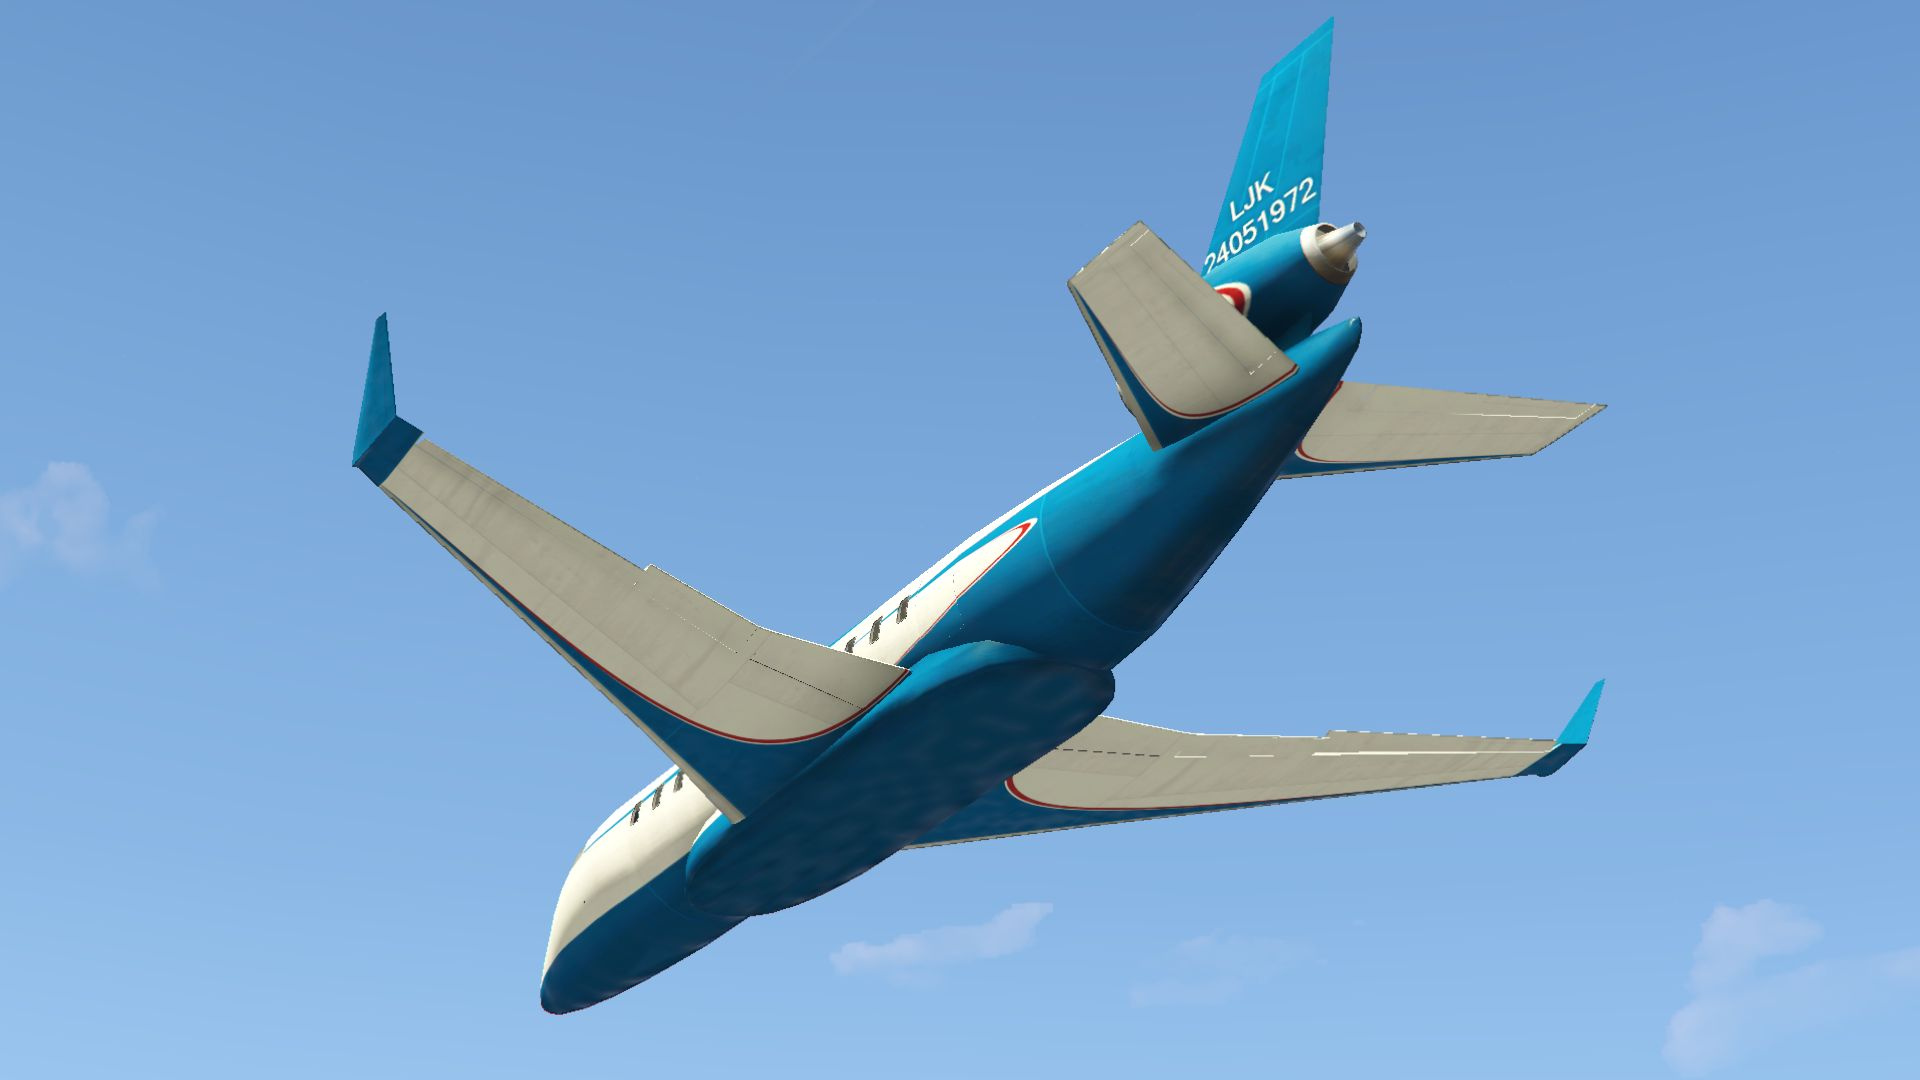 Aviões para GTA 4 com instalação automática: download gratuito